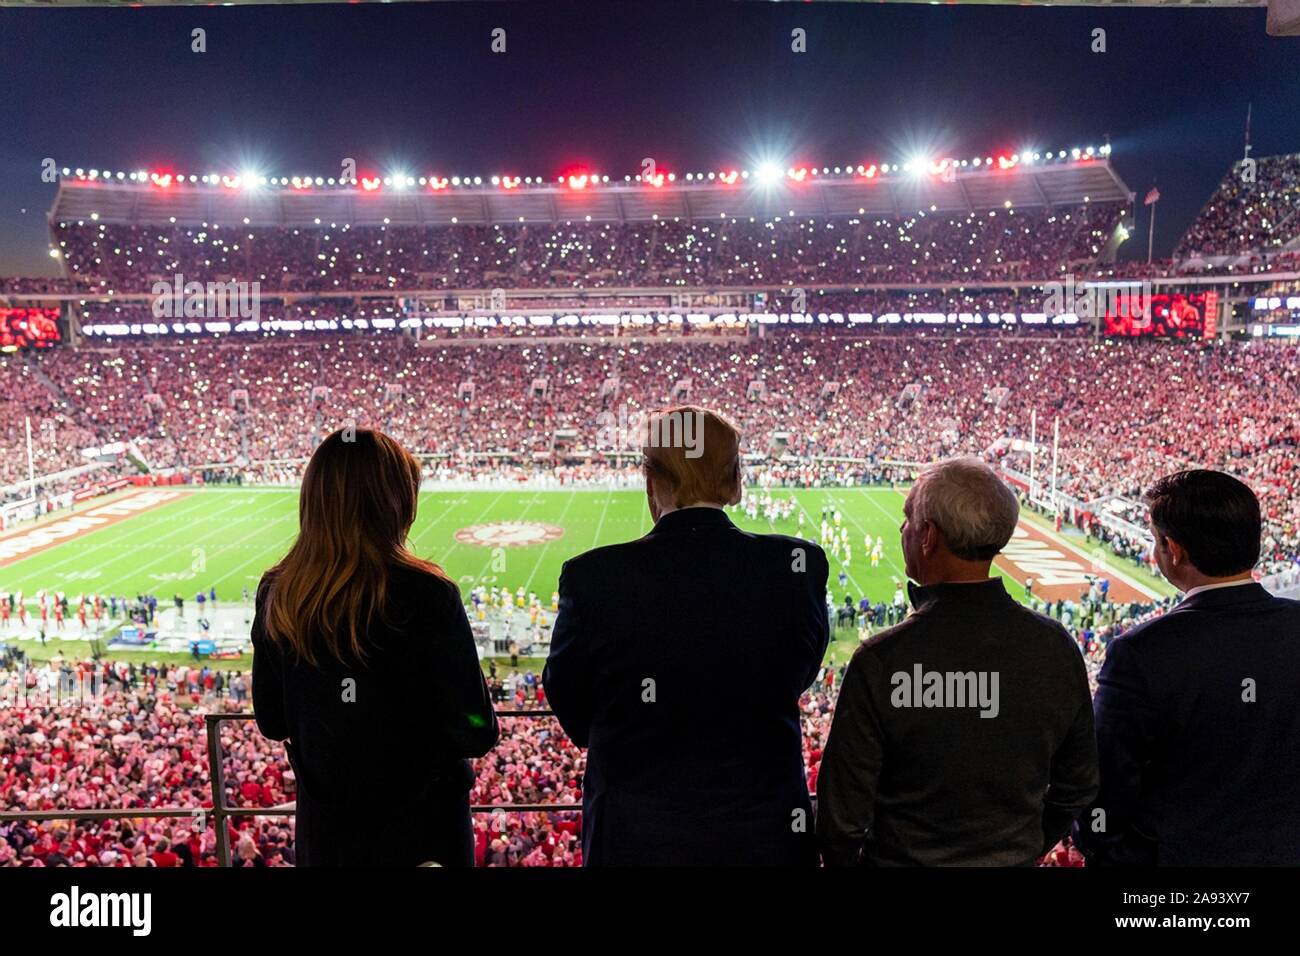 U.S presidente Donald Trump e la First Lady Melania Trump guarda alla University of Alabama vs Università dello stato della Louisiana del gioco del calcio presso lo Stadio Bryant-Denny Novembre 9, 2019 in Tuscaloosa, Alabama. Foto Stock